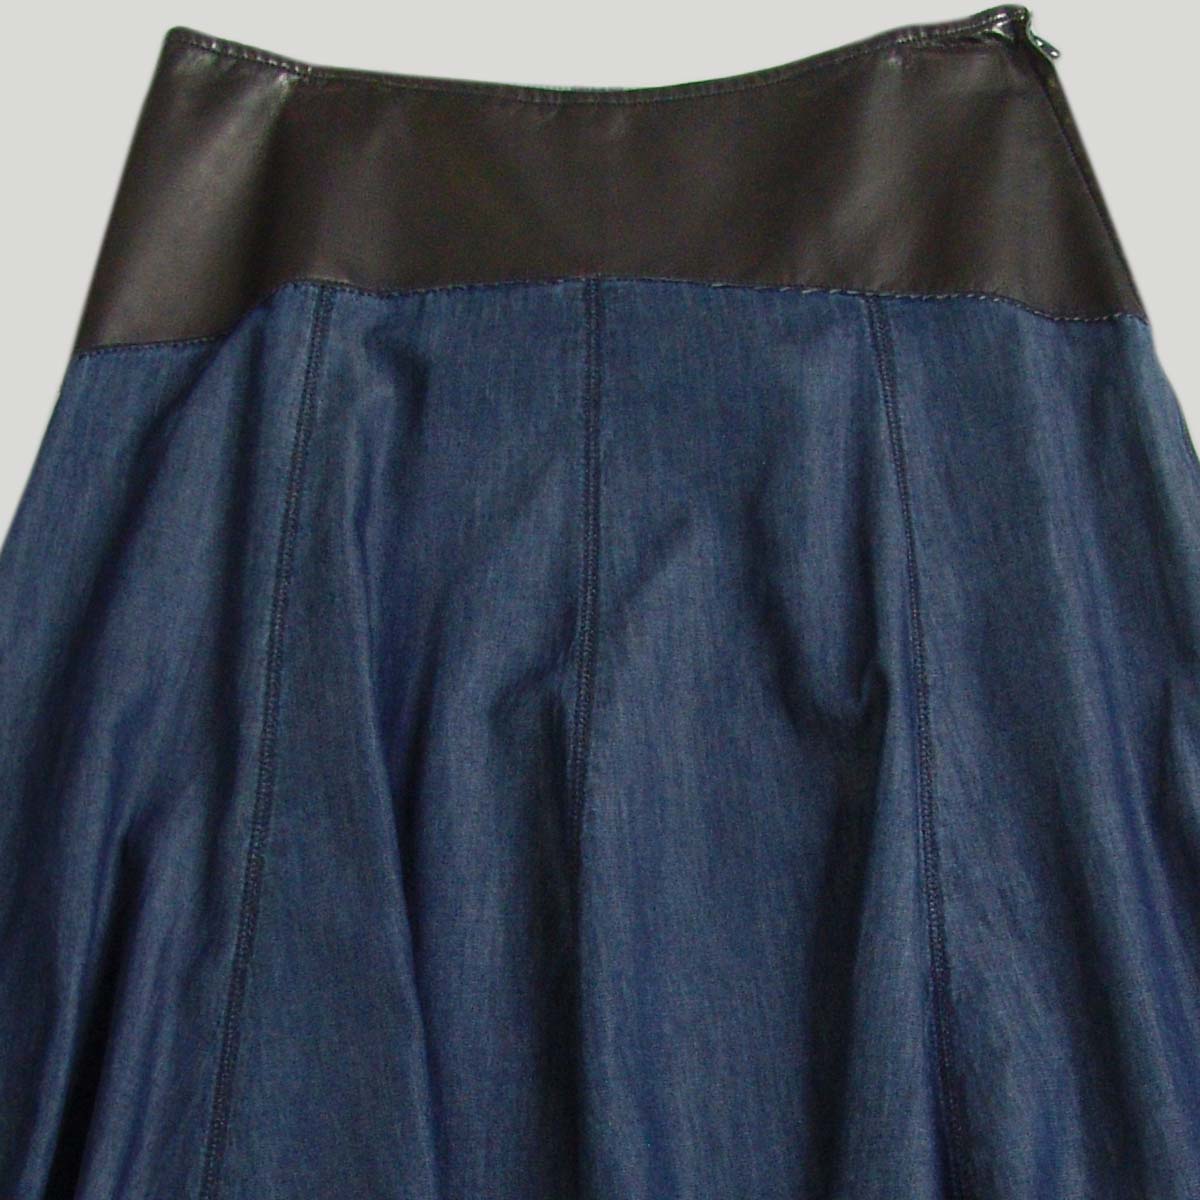 Women's Godet Skirt in denim